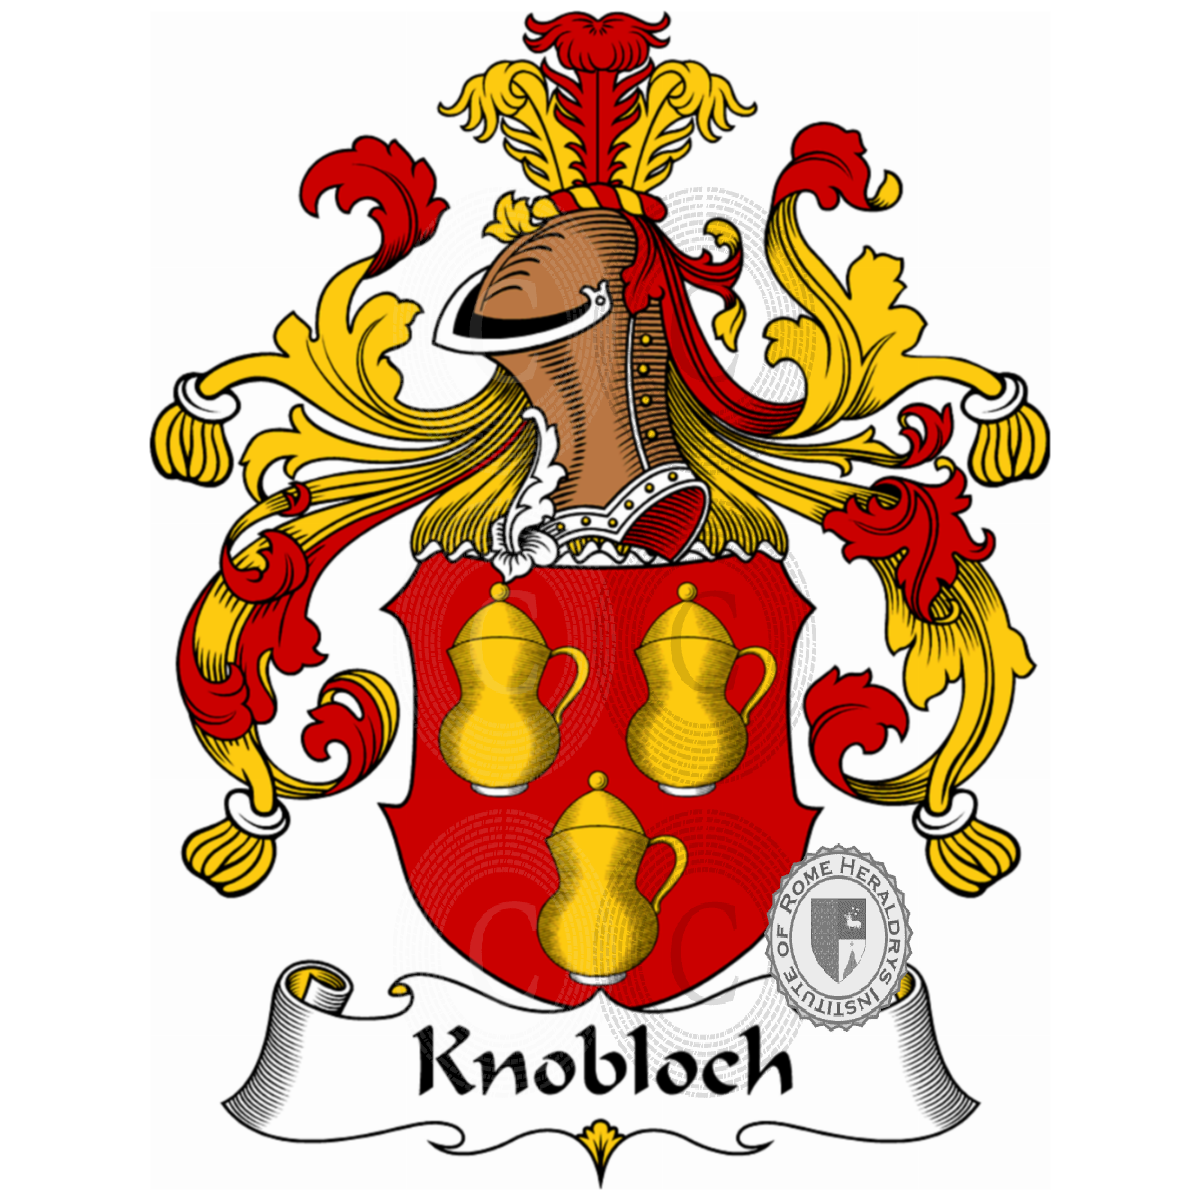 Brasão da famíliaKnobloch, Chnobolohe,Knoblauch,Knoblich,von Droste